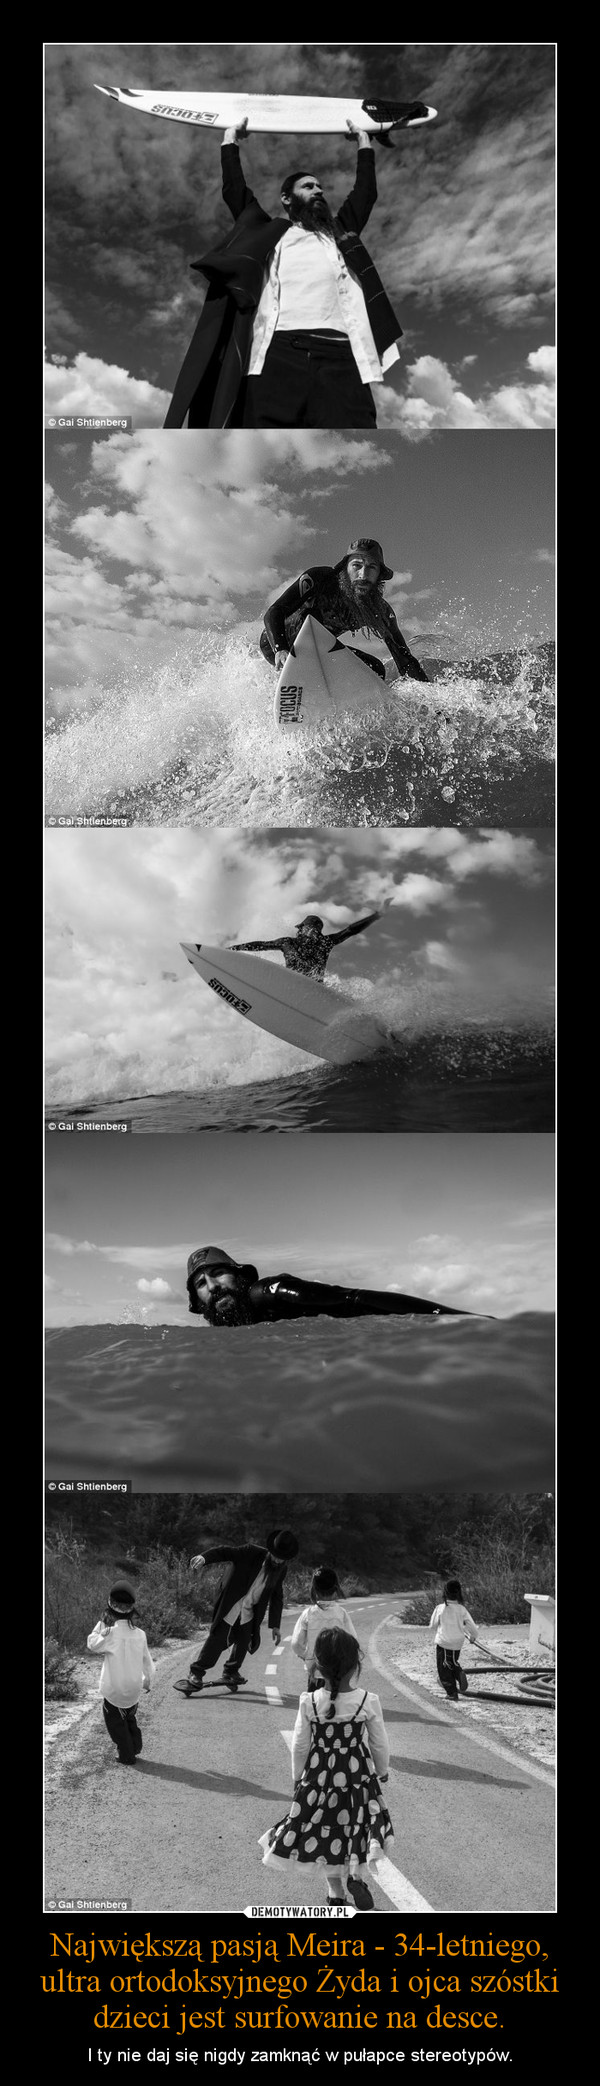 Największą pasją Meira - 34-letniego, ultra ortodoksyjnego Żyda i ojca szóstki dzieci jest surfowanie na desce.